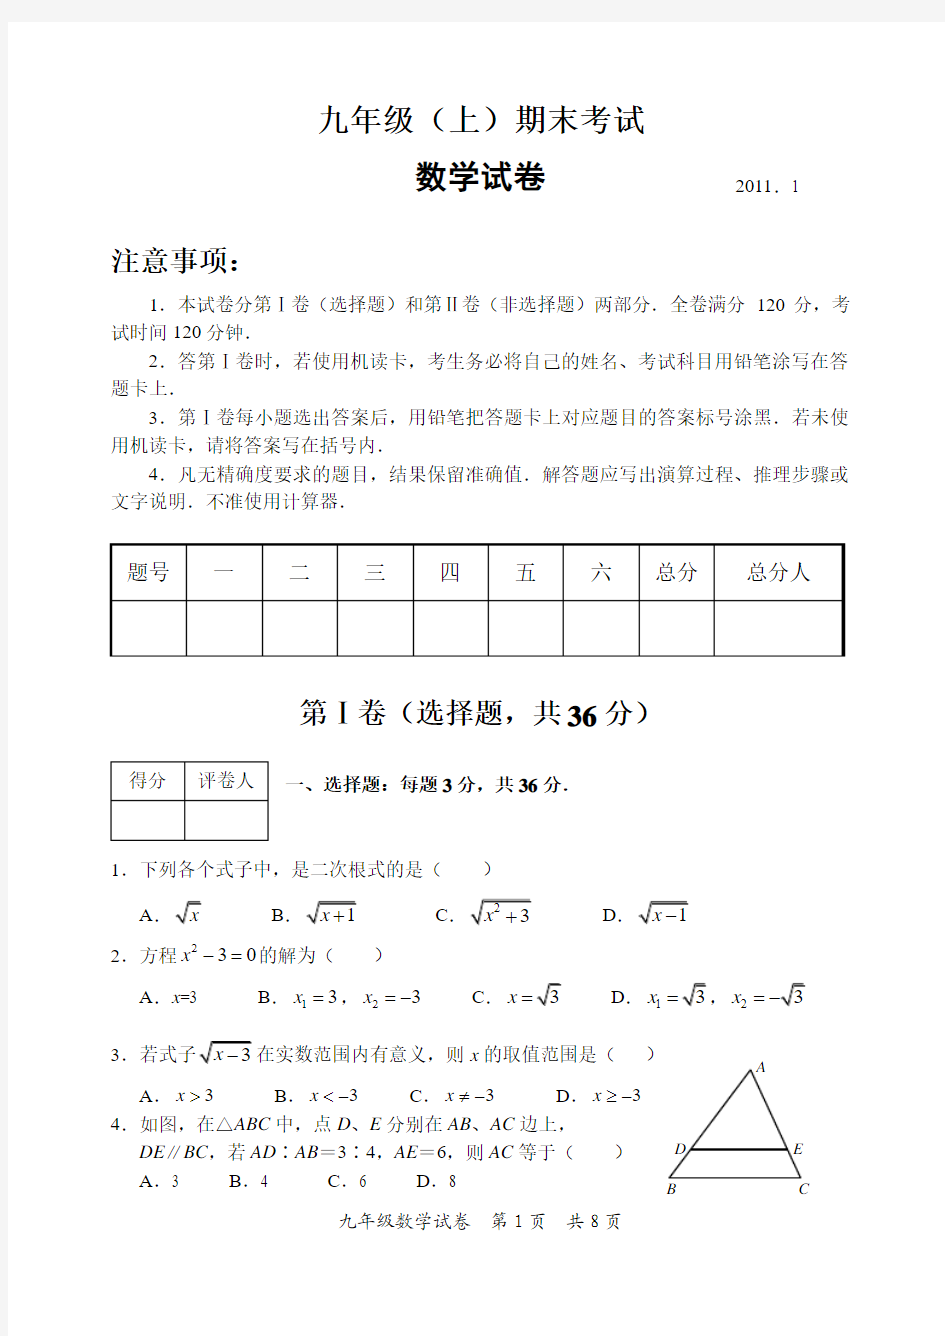 九年级(上)期末考试数学试卷(2011.1)